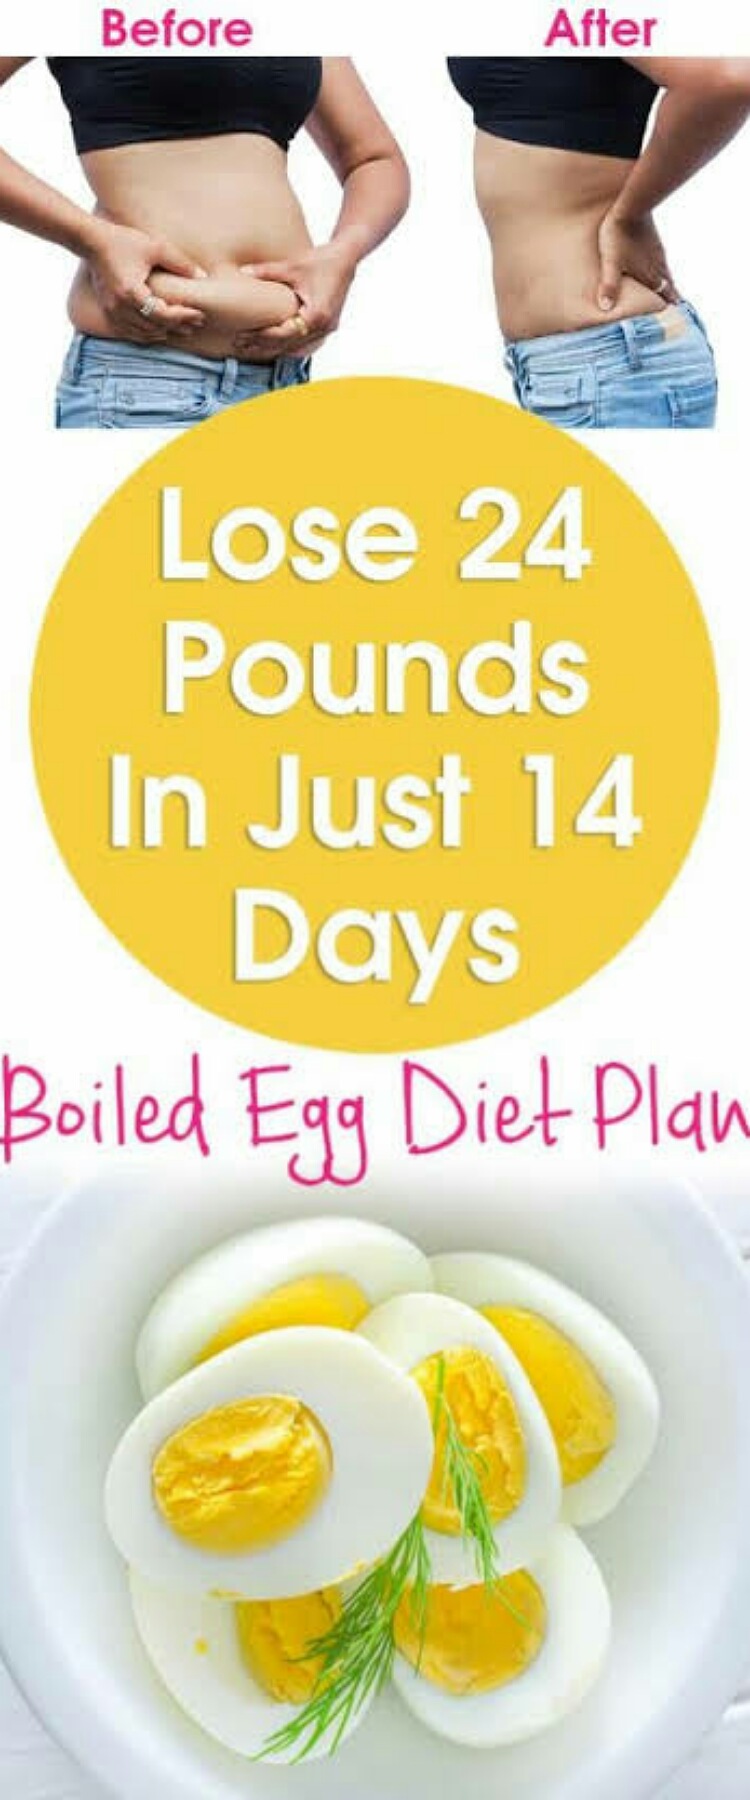 Egg diet 